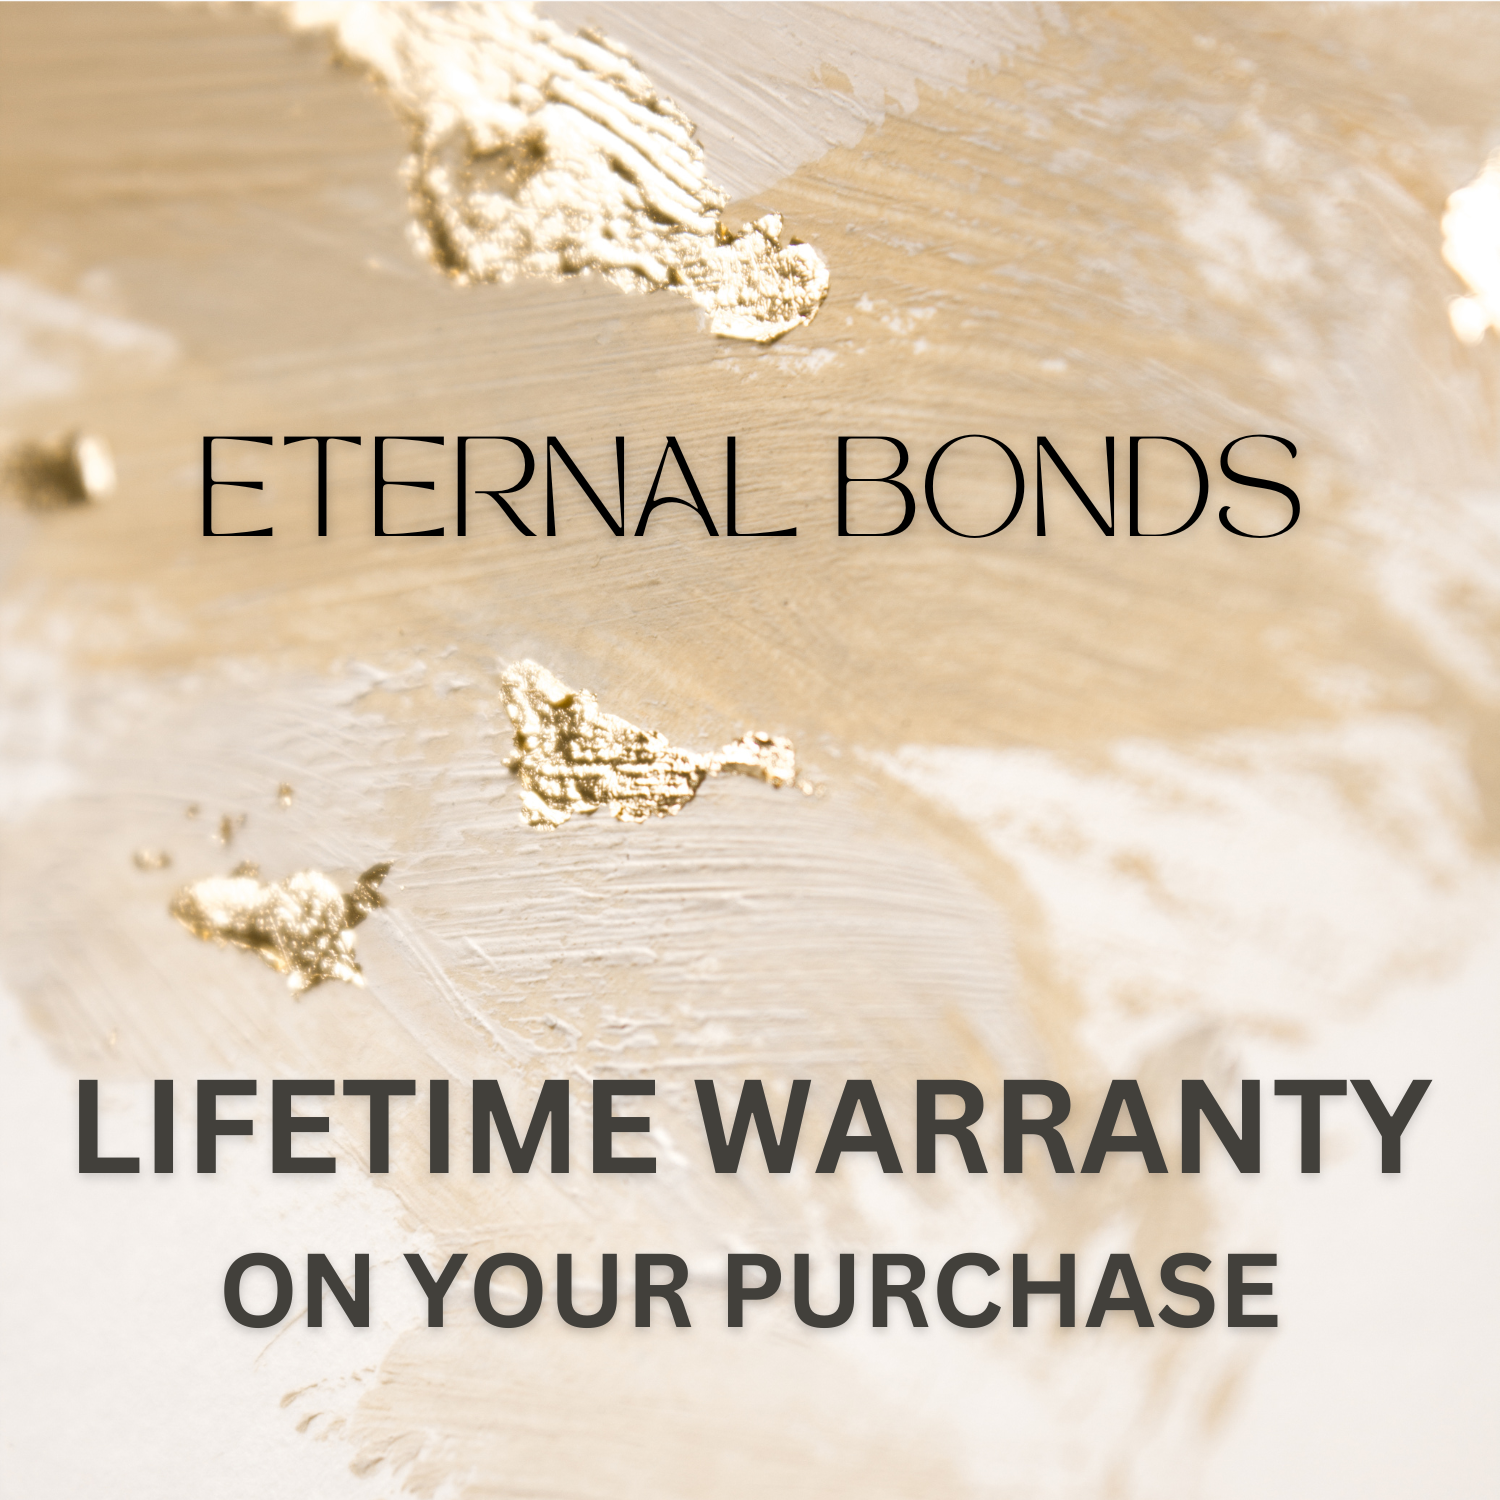 Eternal Bonds Lifetime Warranty